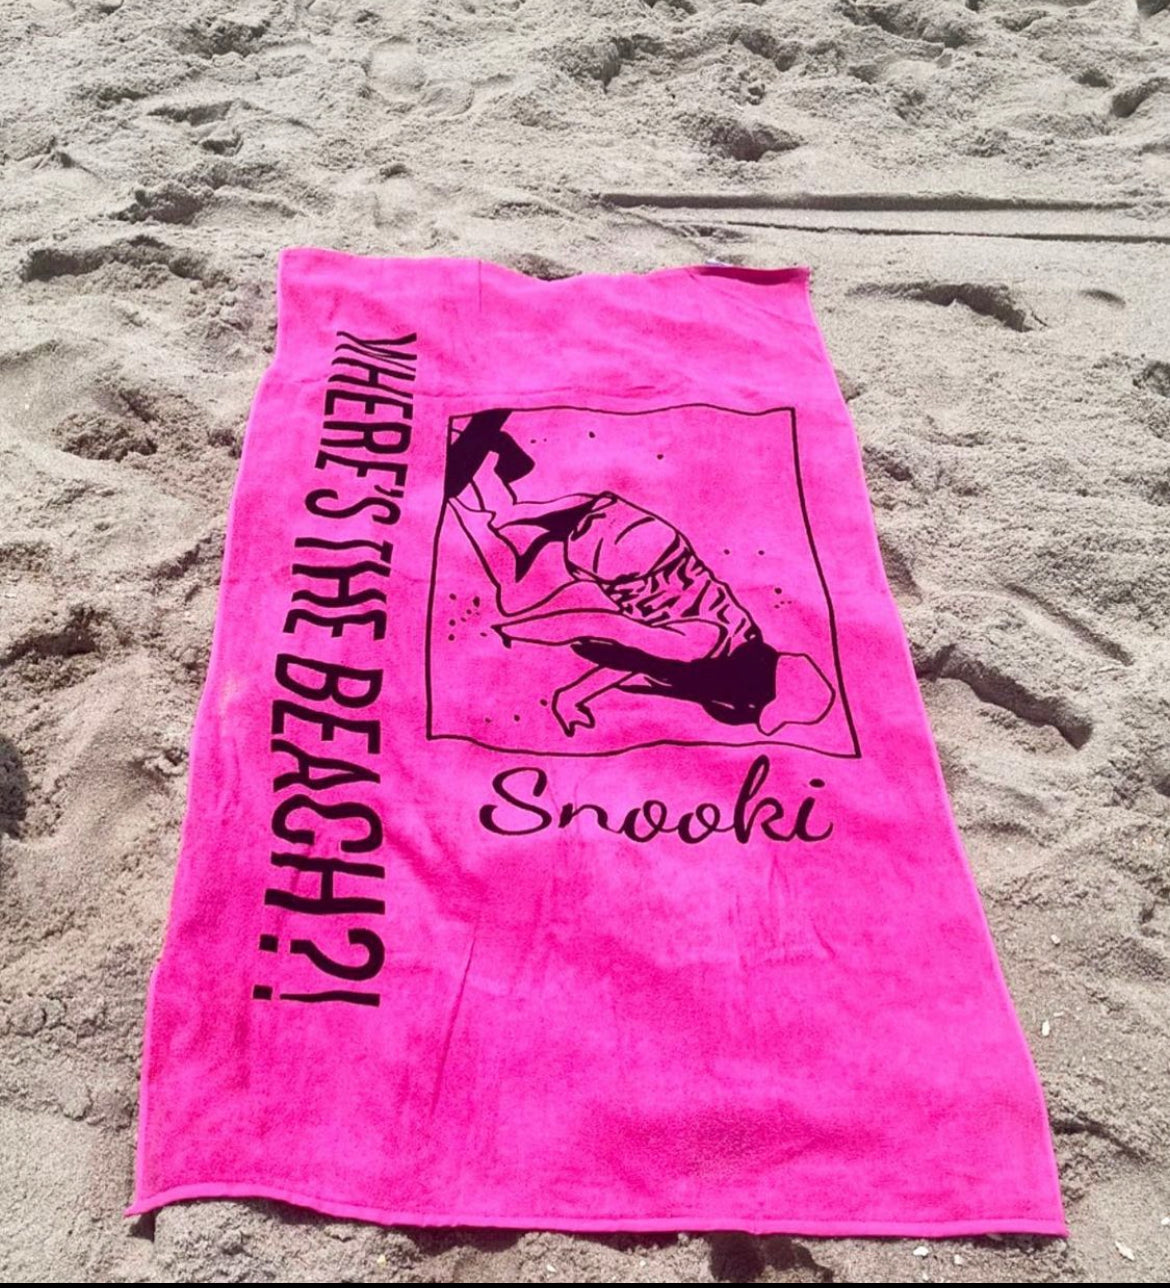 Monogrammed Beach Towel